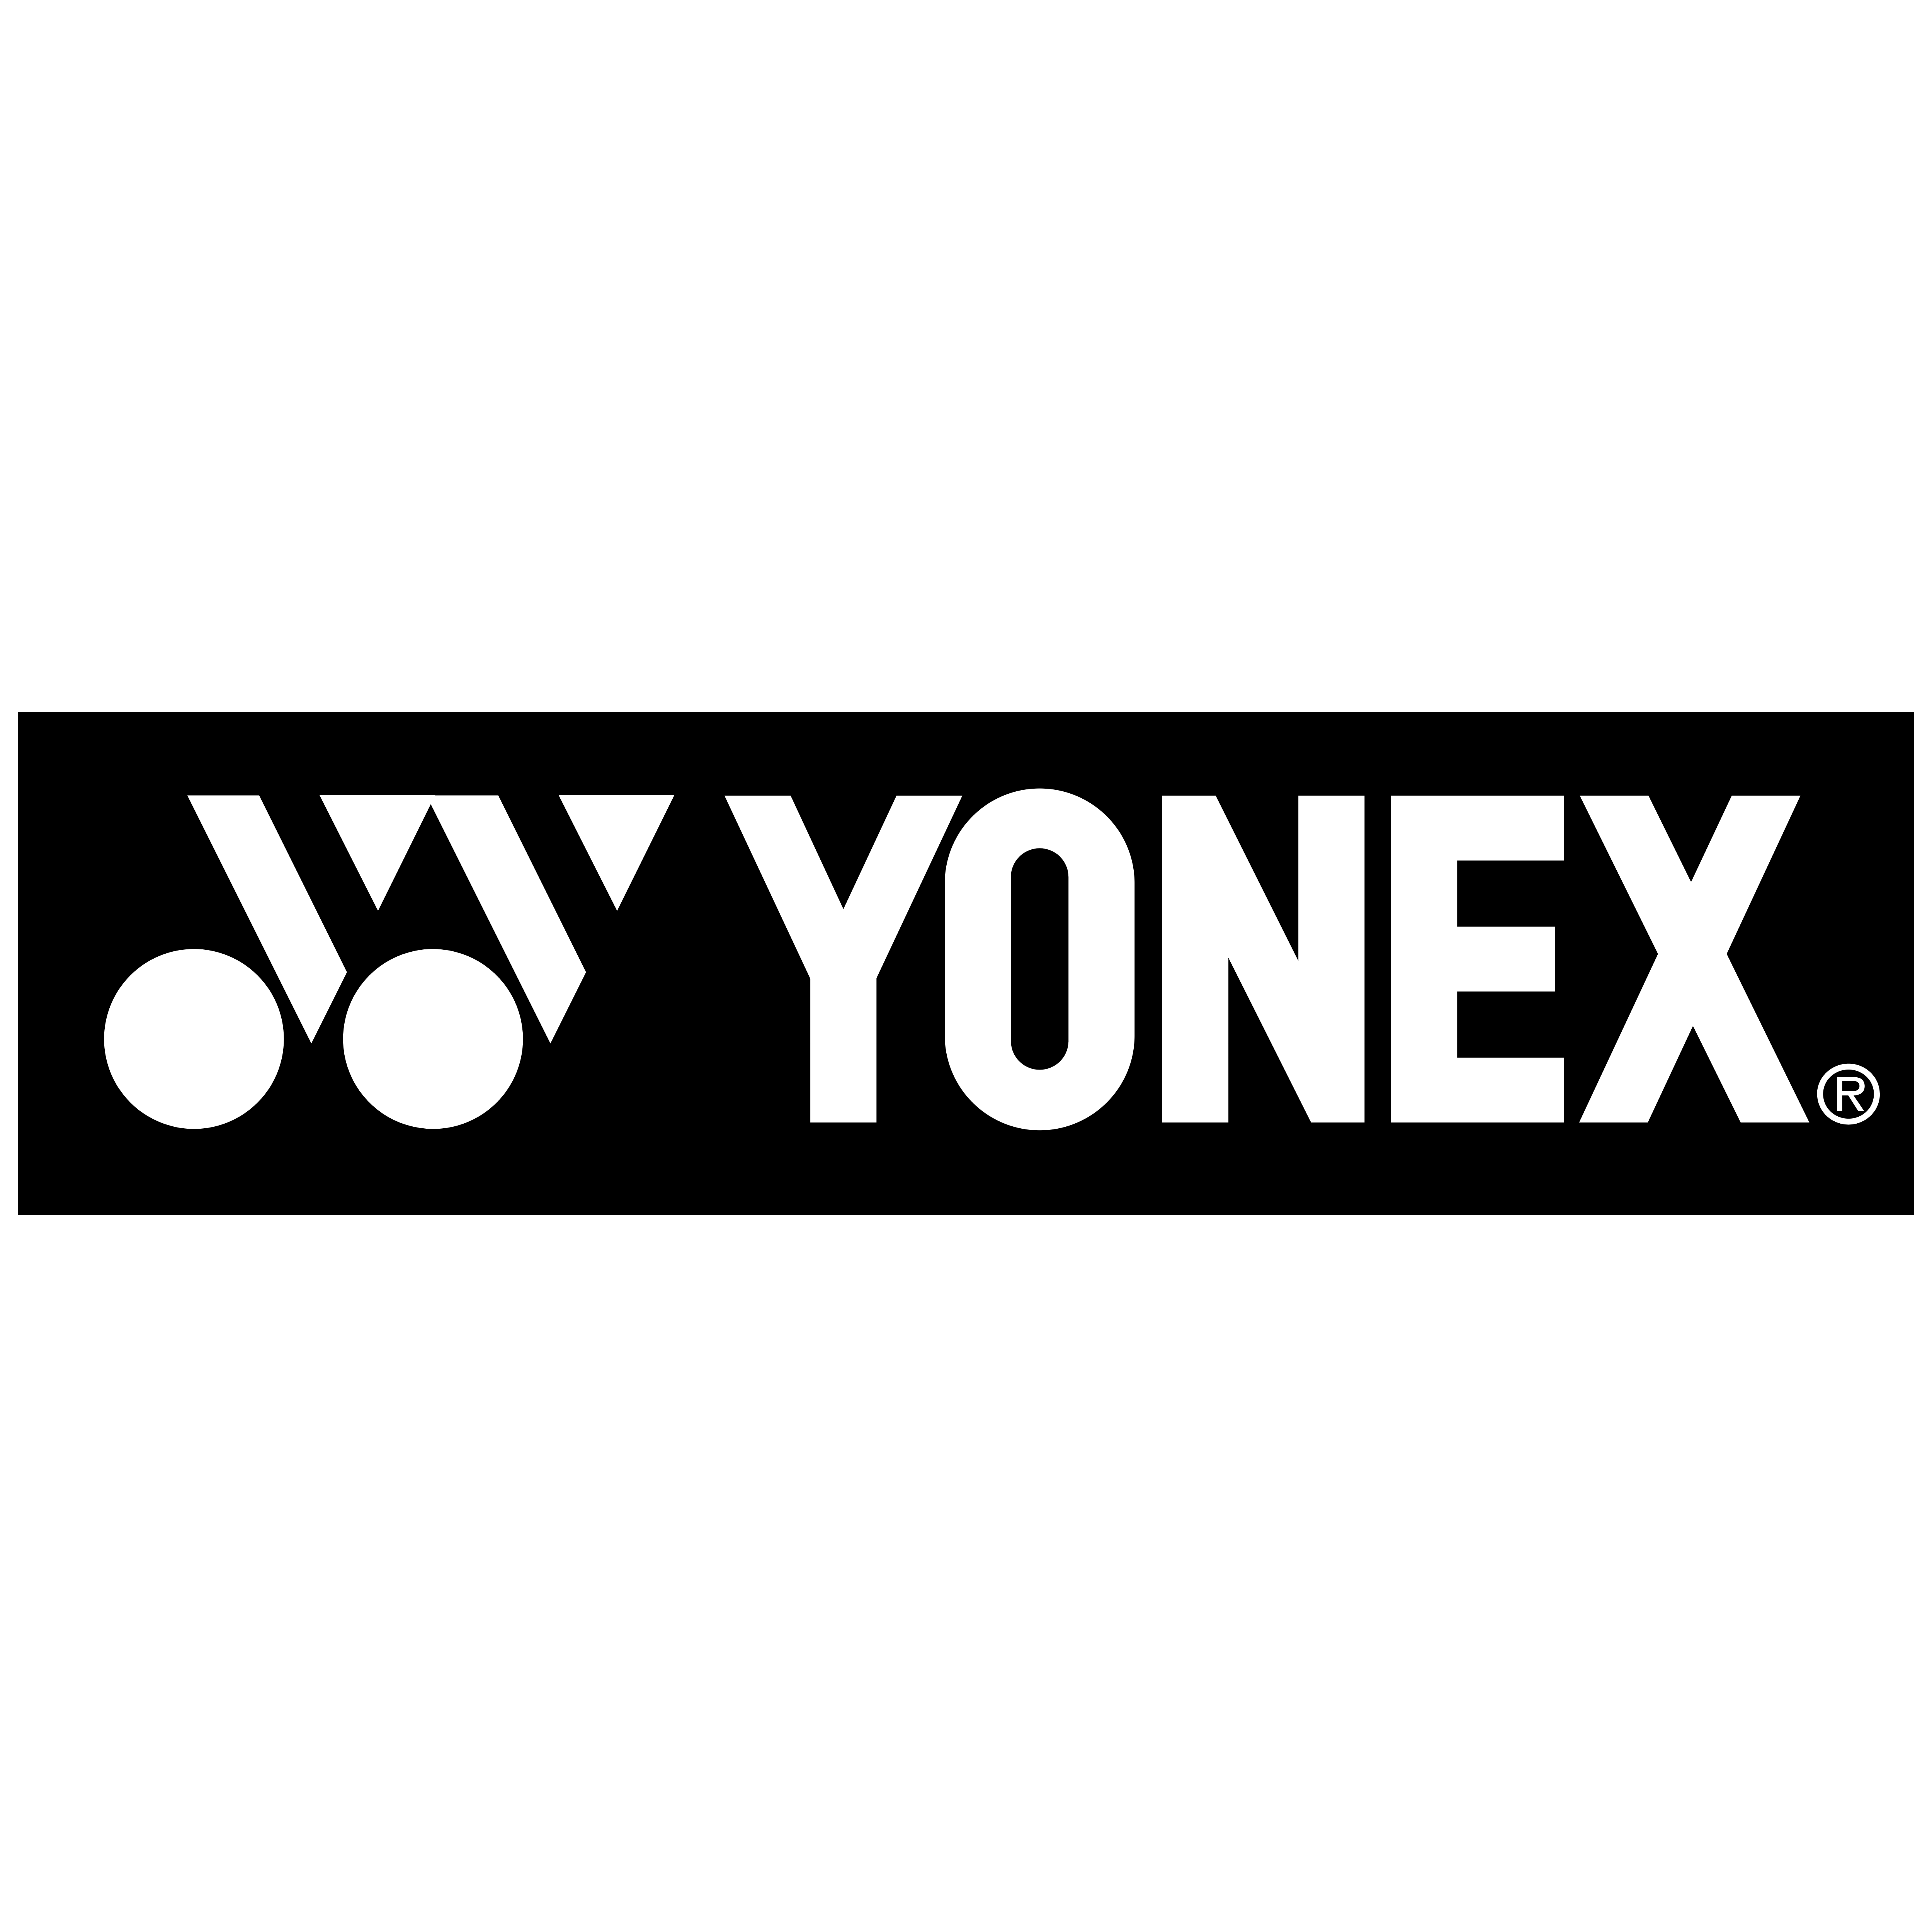 Yonex – Logos Download